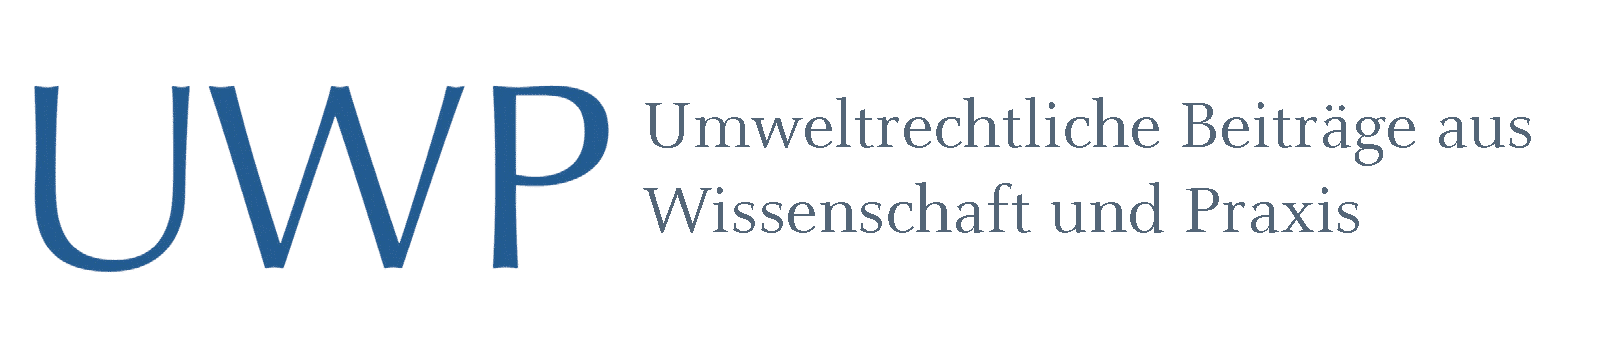 UWP – Umweltrechtliche Beiträge aus Wissenschaft und Praxis - Logo UWP